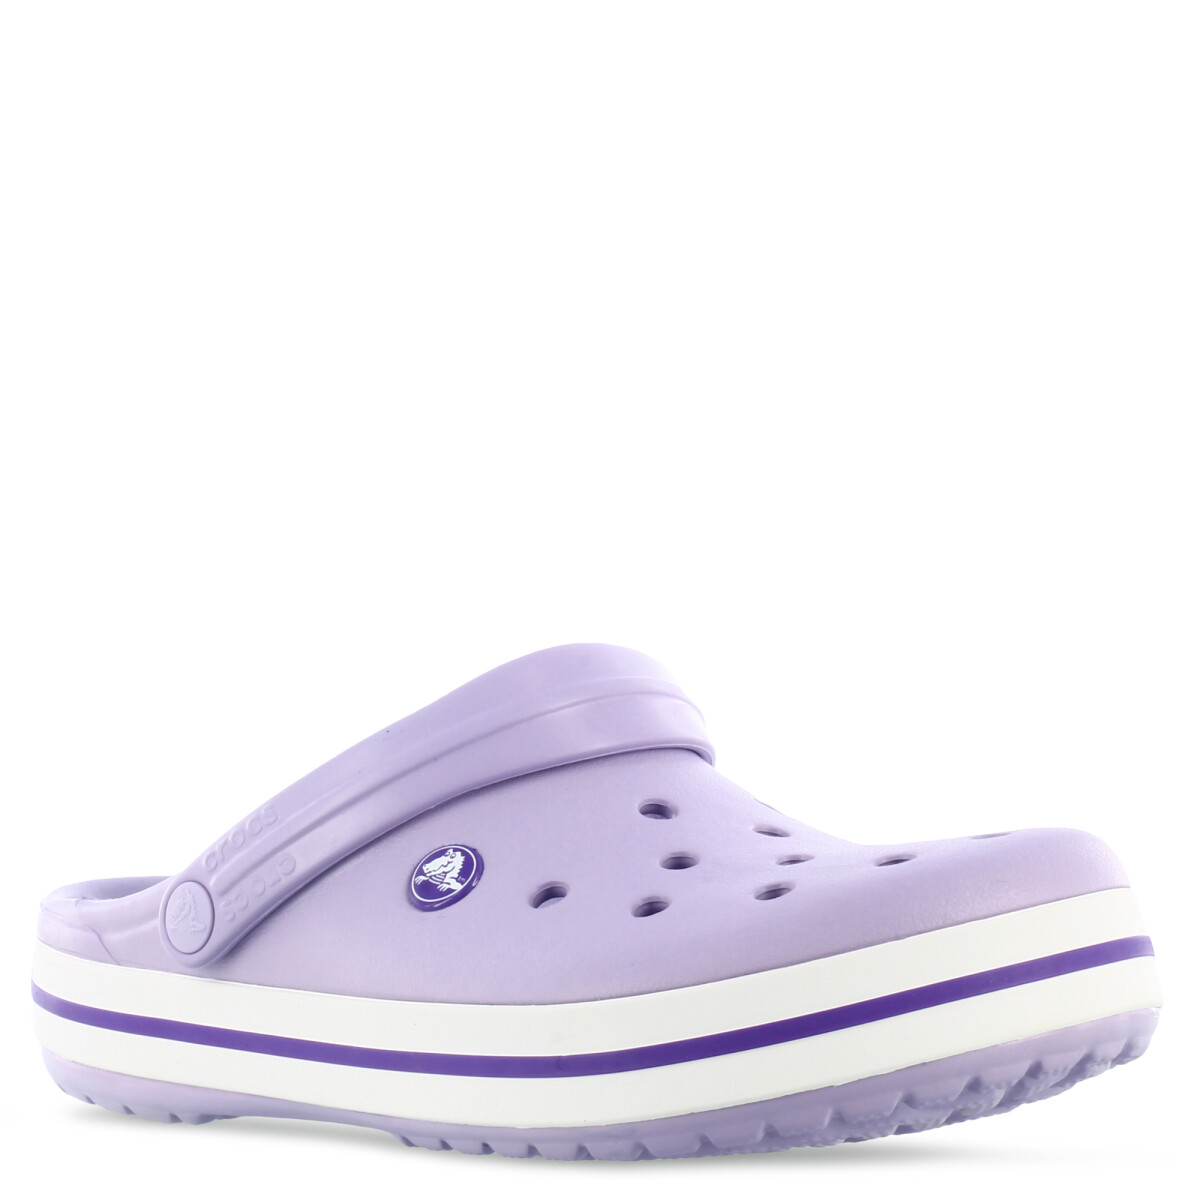 Zueco Crocband Crocs - Lavender/Purple 